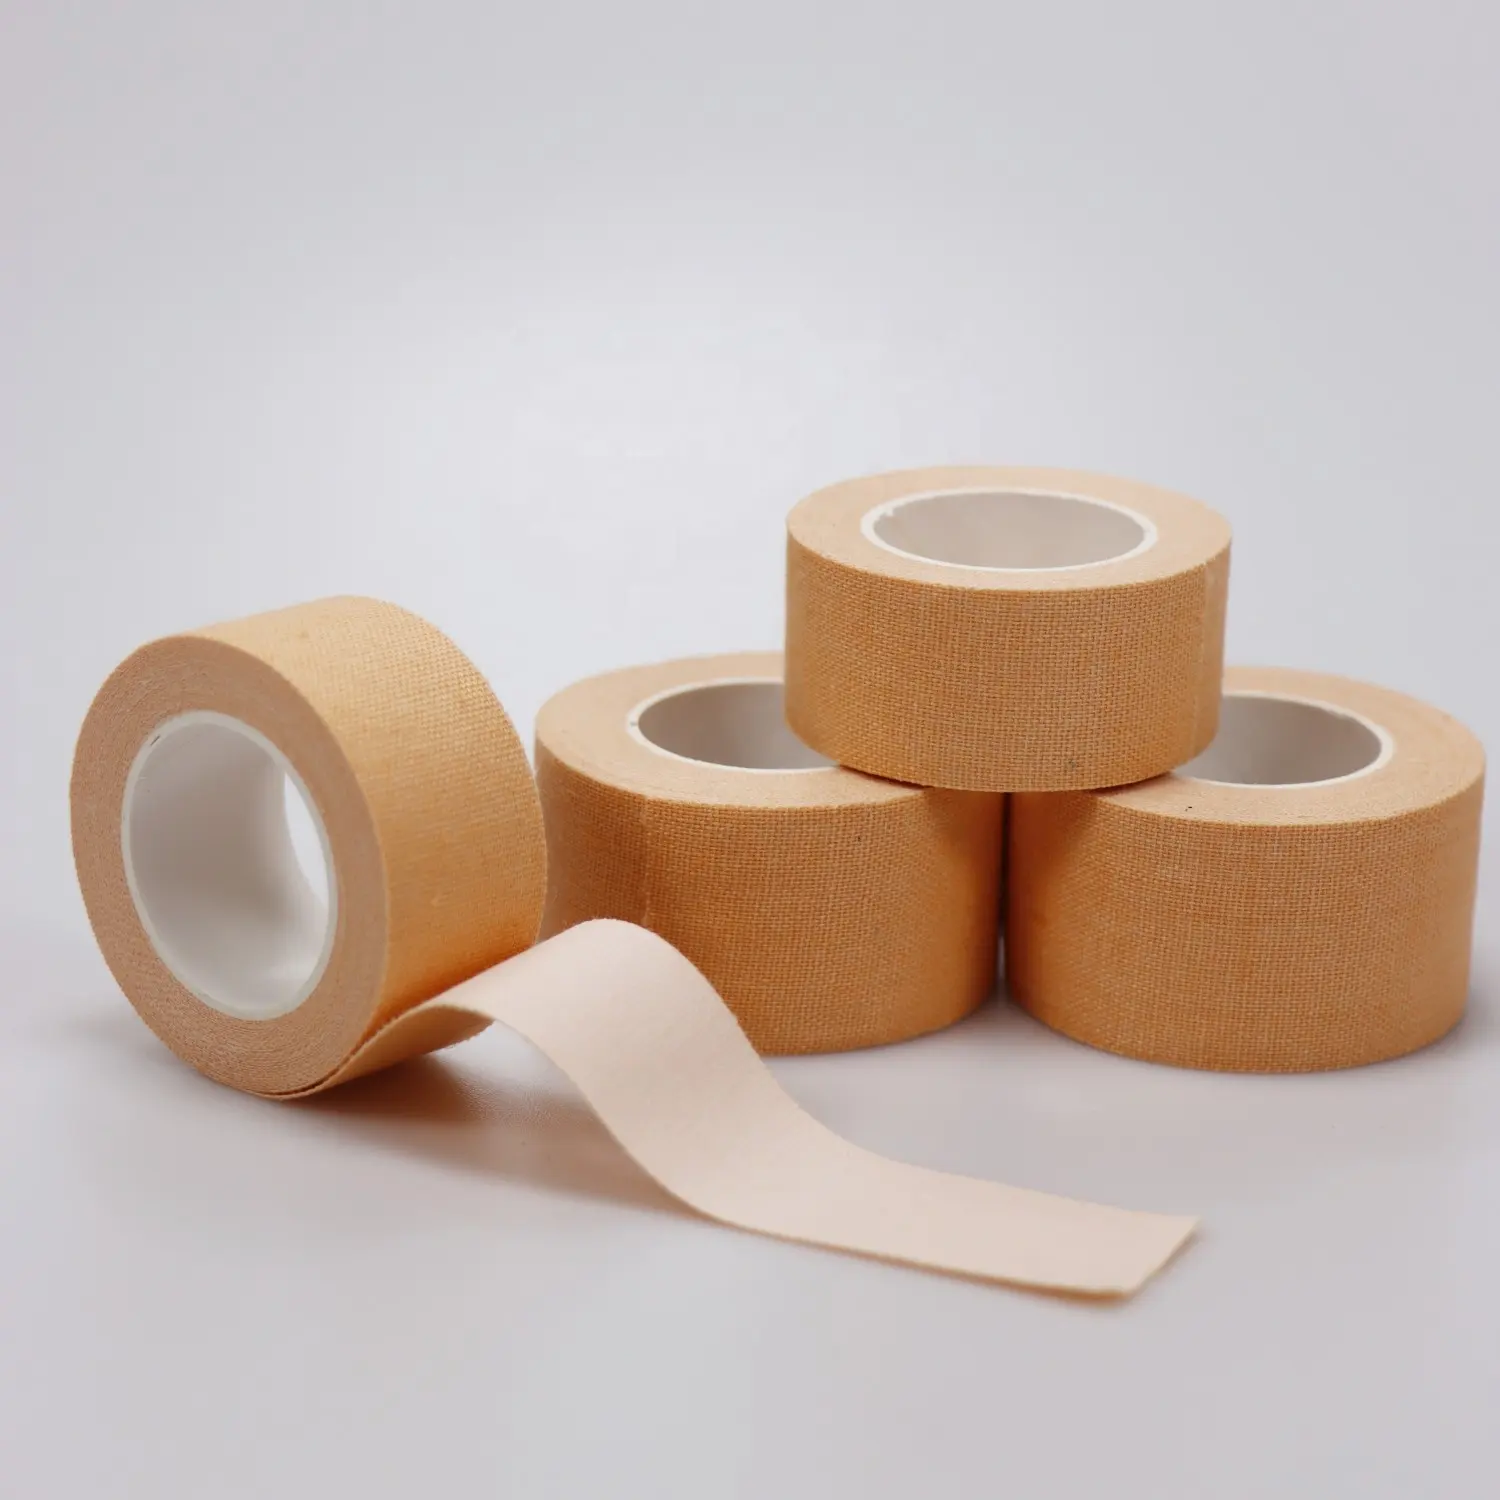 Alta Adesiva Algodão Completo Alta Qualidade branco Rígida cintas esportes Athletic Cloth Tape Futebol Futebol Tape